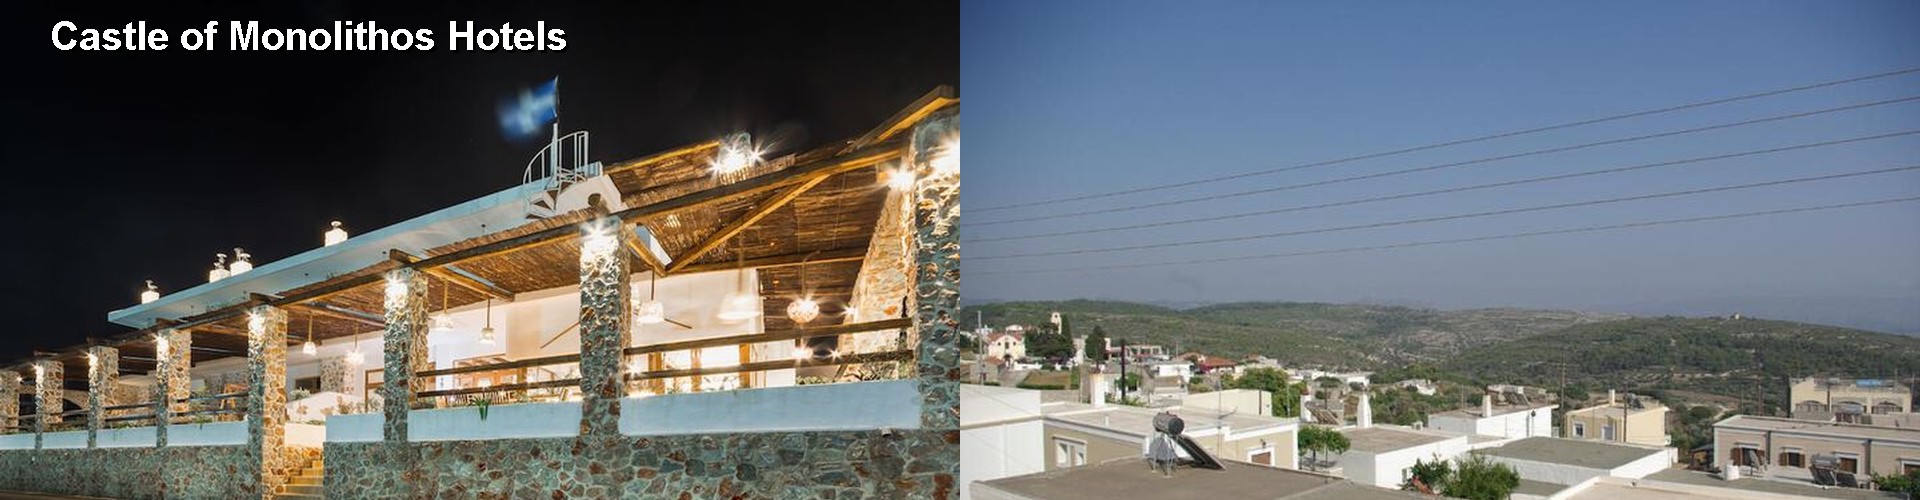 5 Best Hotels near Castle of Monolithos